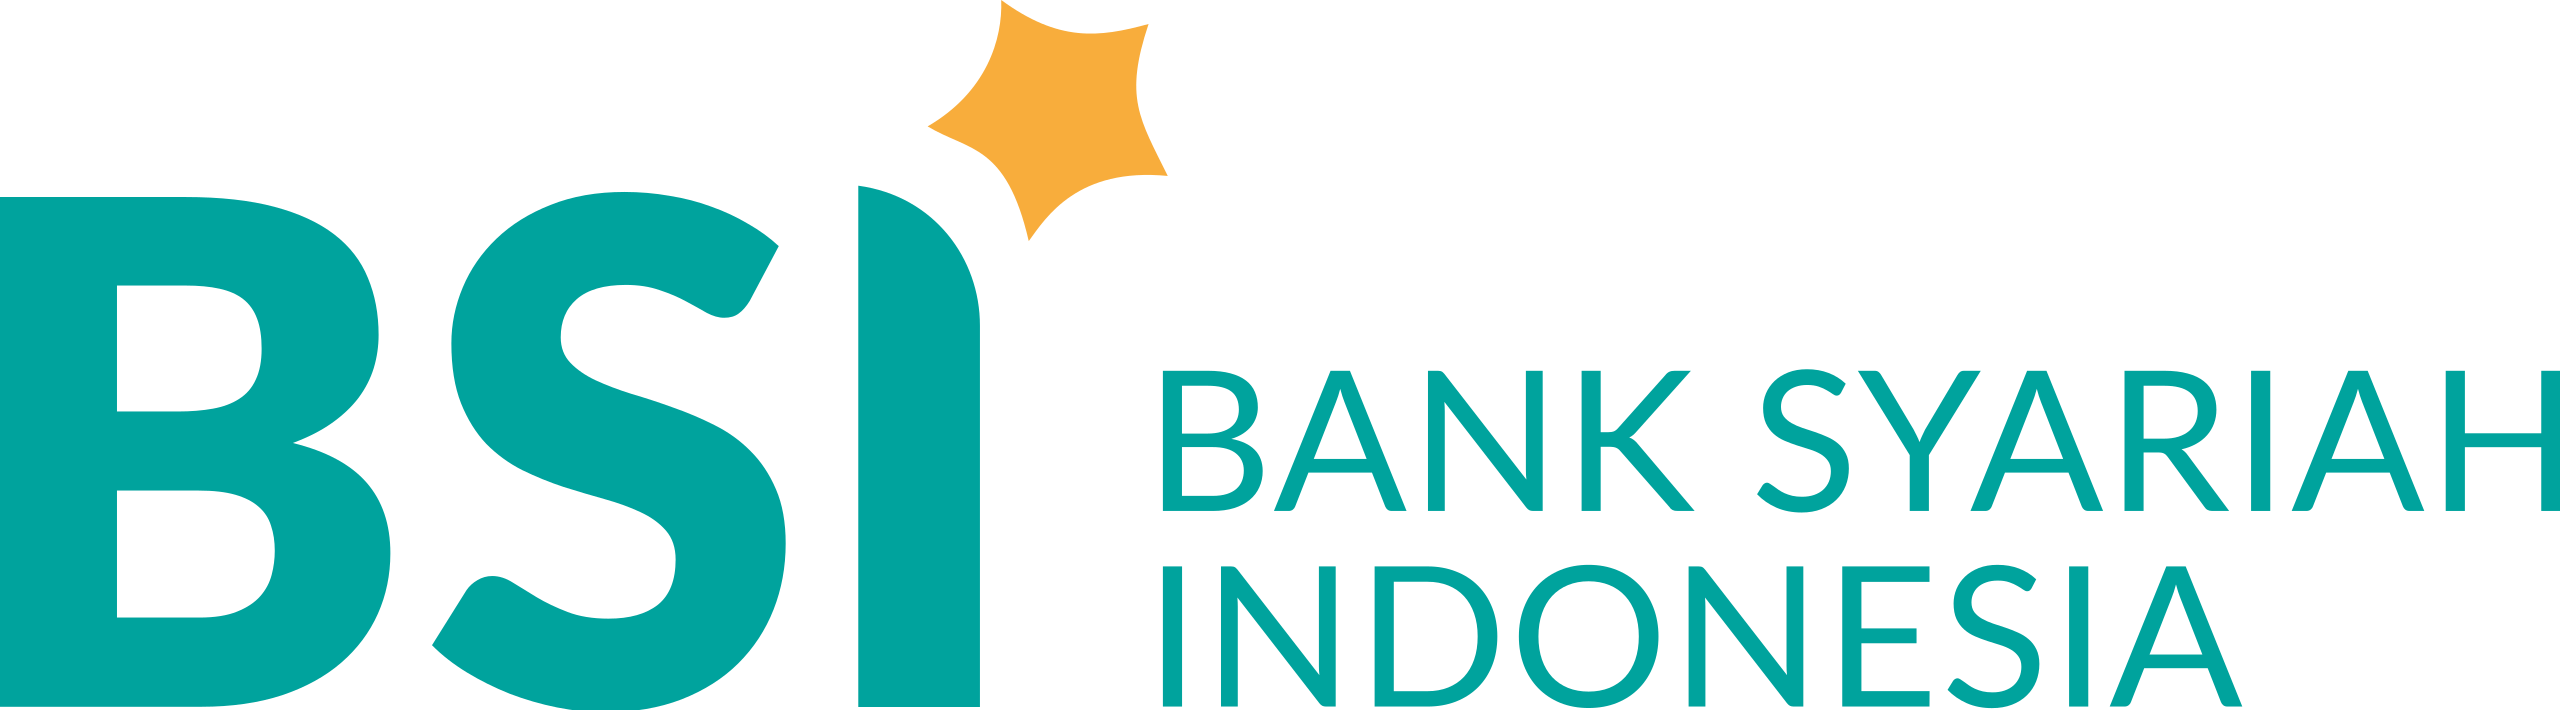 Bank_Syariah_Indonesia.svg